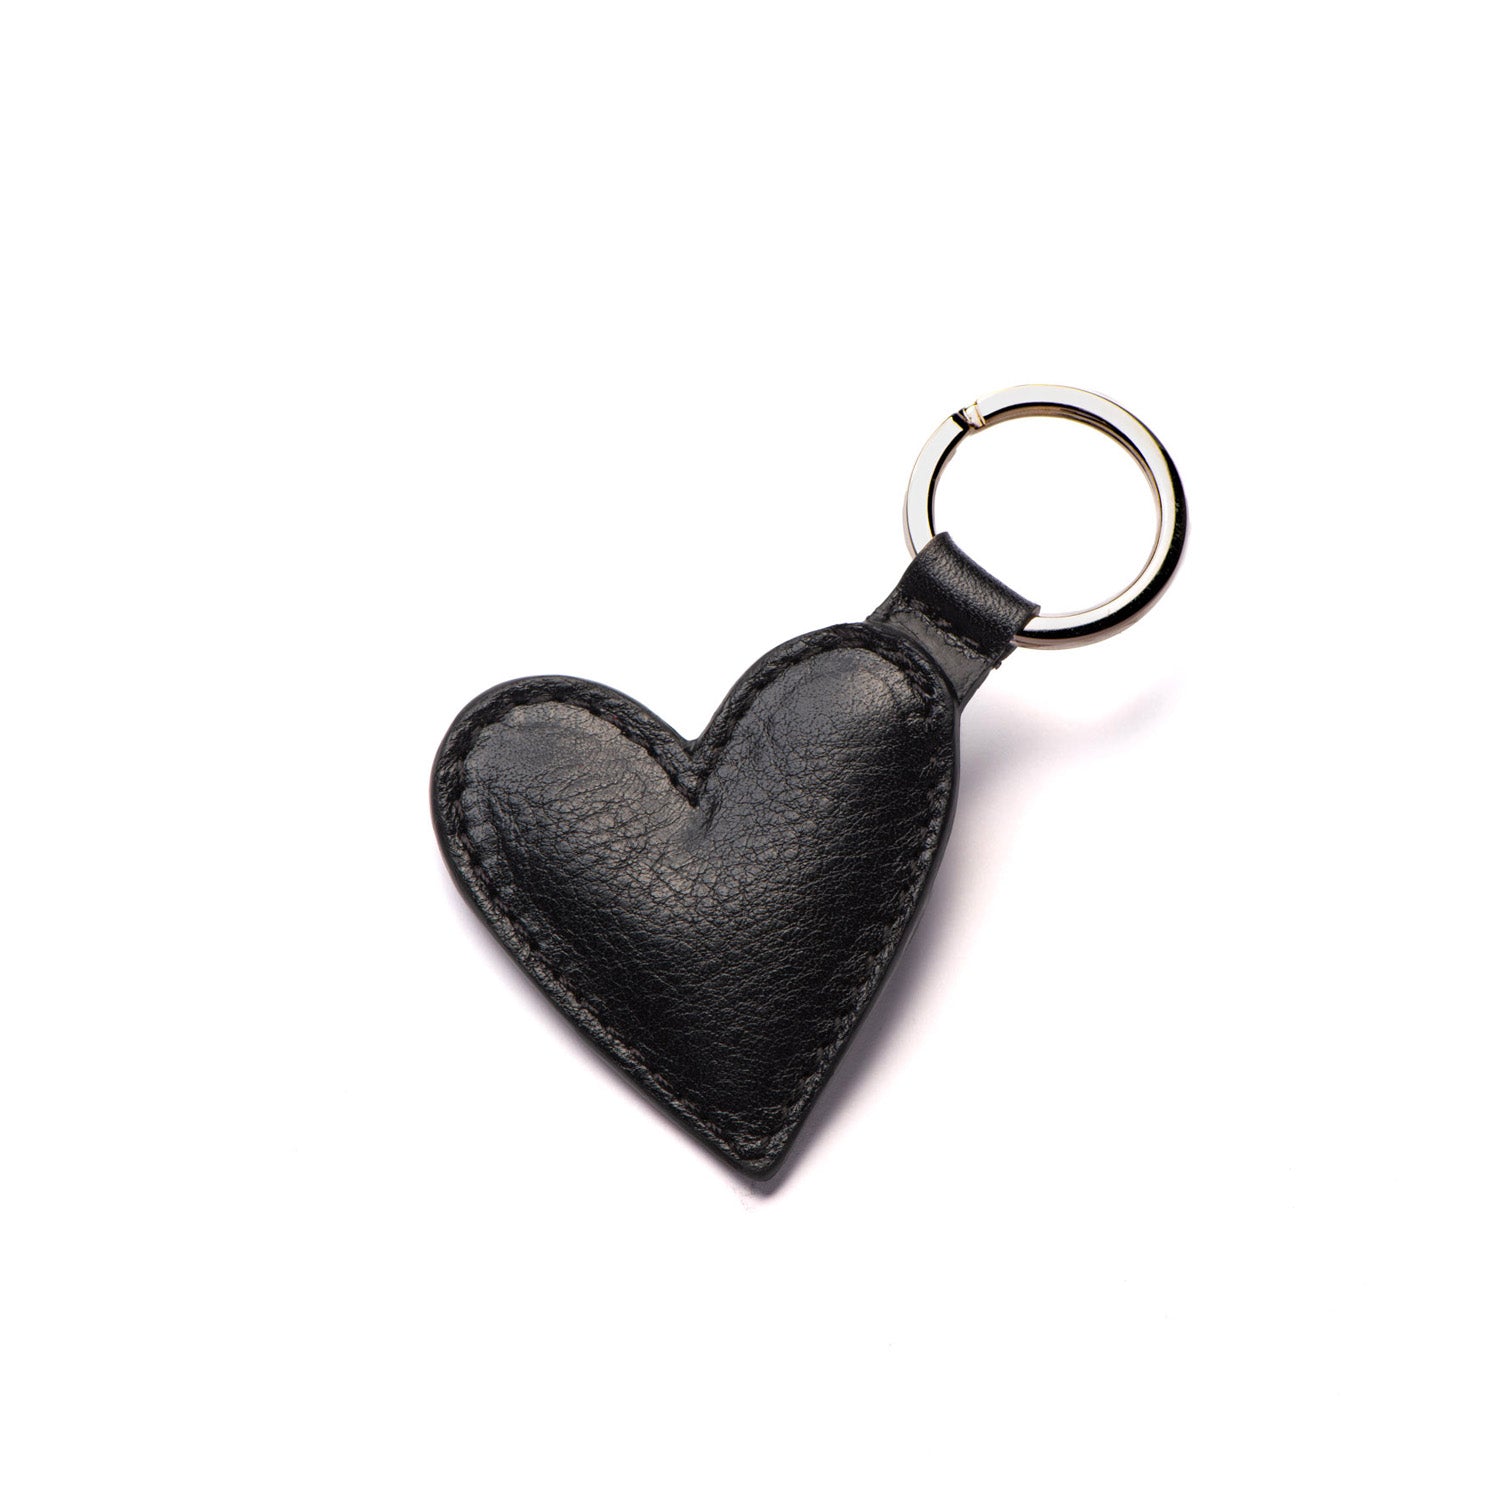 Porte-clé en cuir noir upcyclé. Petite maroquinerie créative made in France. Idée cadeau avec option de personnalisation.